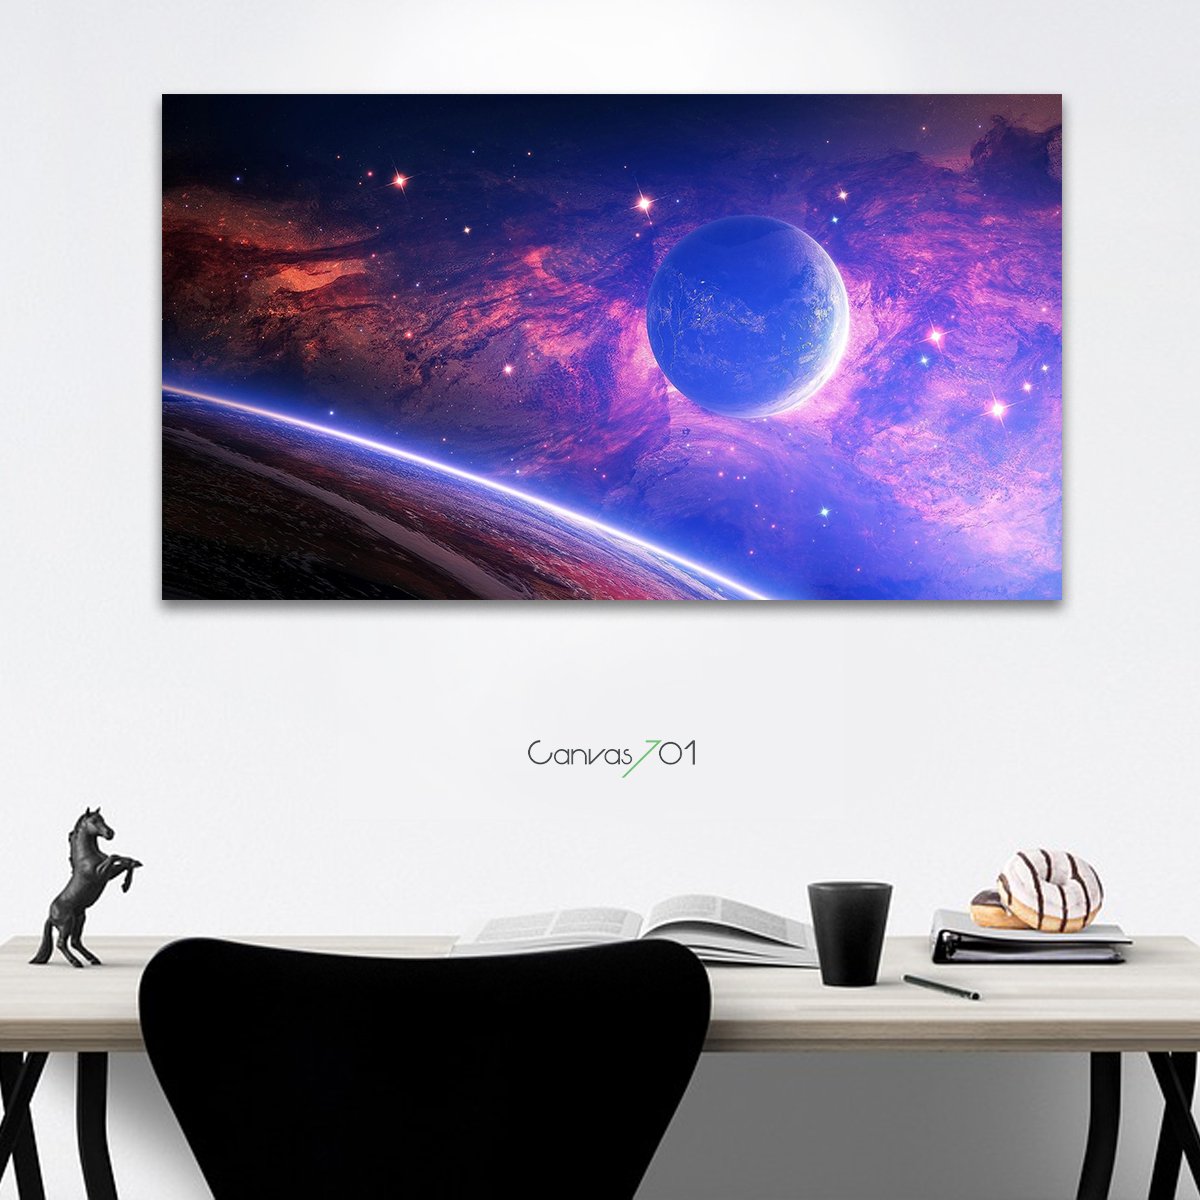 Canvas701 | Mor Uzay Kanvas Tablo